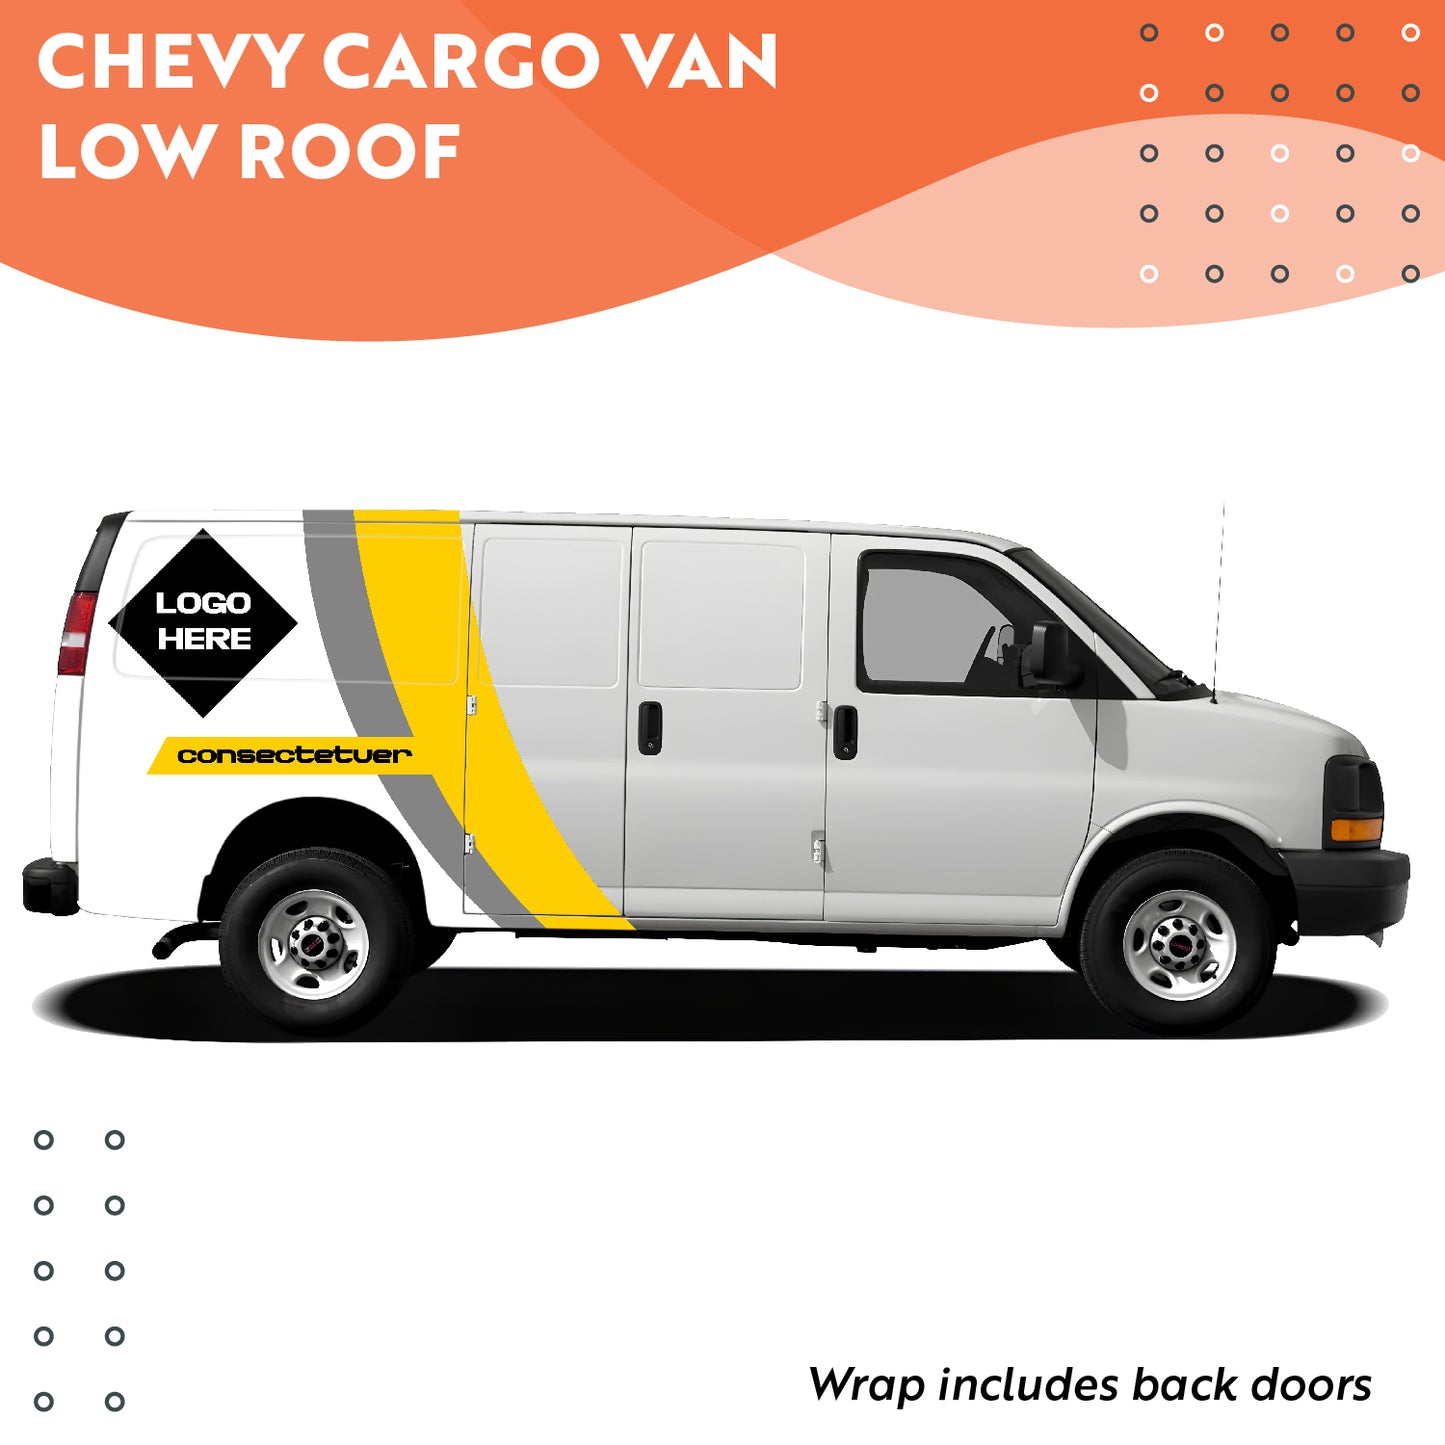 Chevy Cargo Van Low Roof (GMC/CHEVROLET)